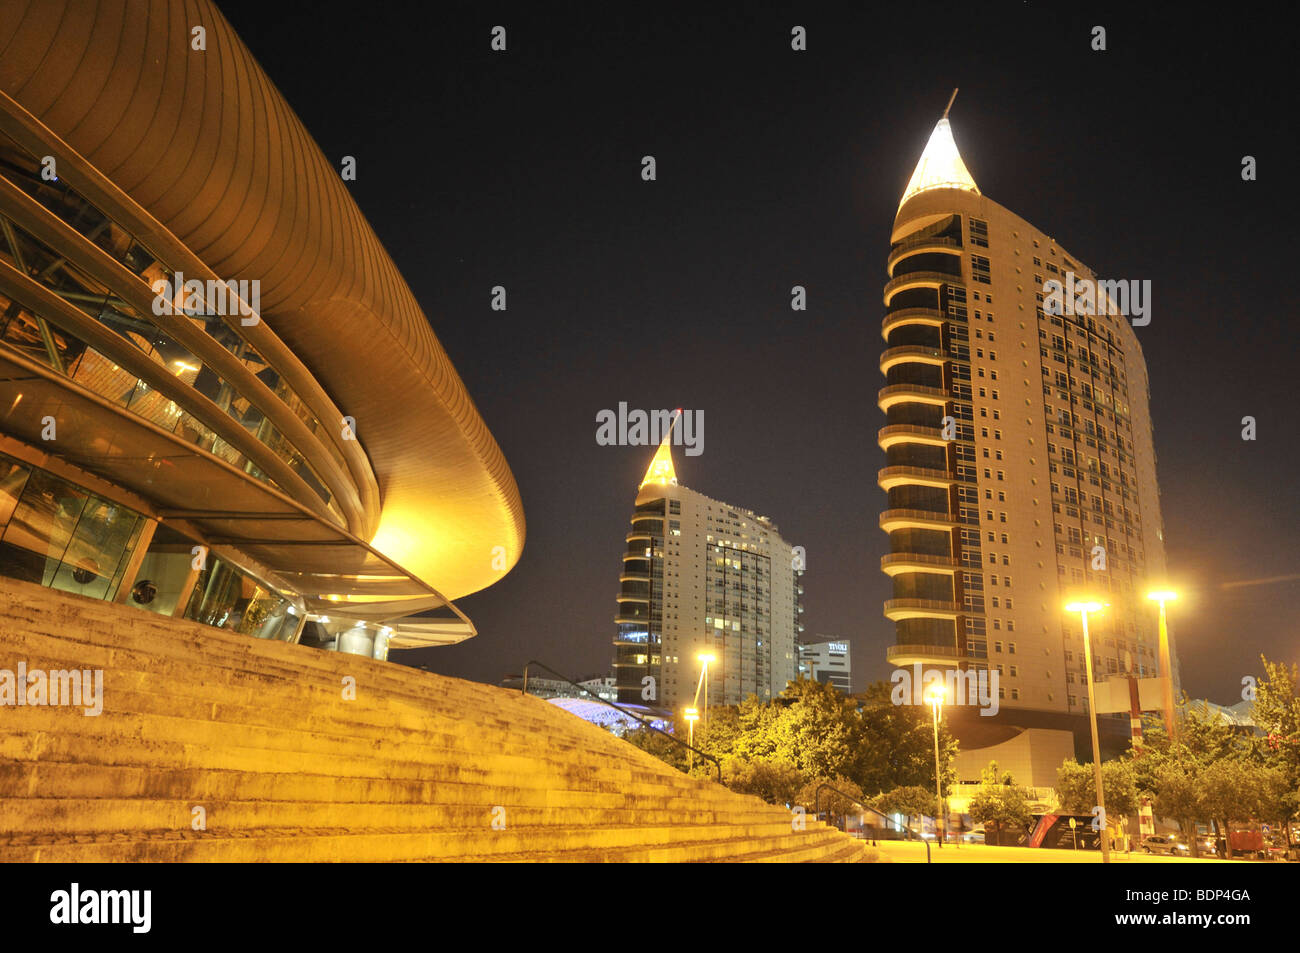 L'architecture moderne, Pavilhao Atlantico, gauche, et gratte-ciel Sao Gabriel et Sao Rafael, à droite, dans le Parque das Nações park Banque D'Images